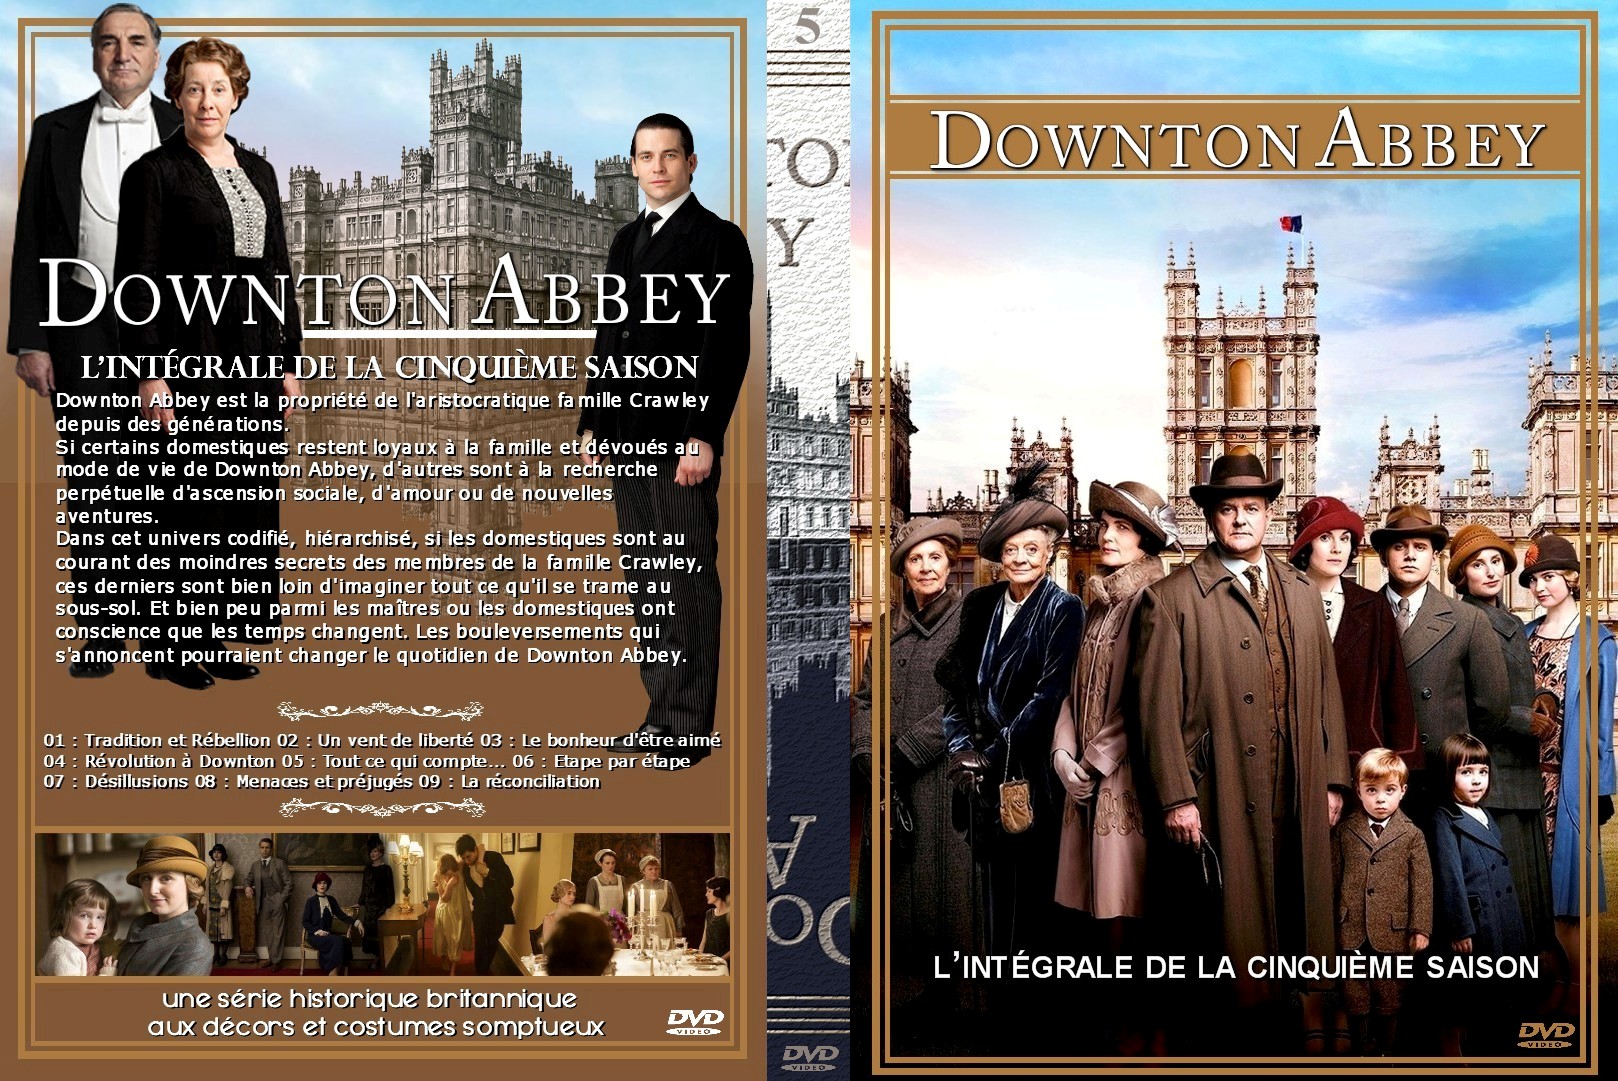 Jaquette DVD Downton Abbey Saison 5 custom